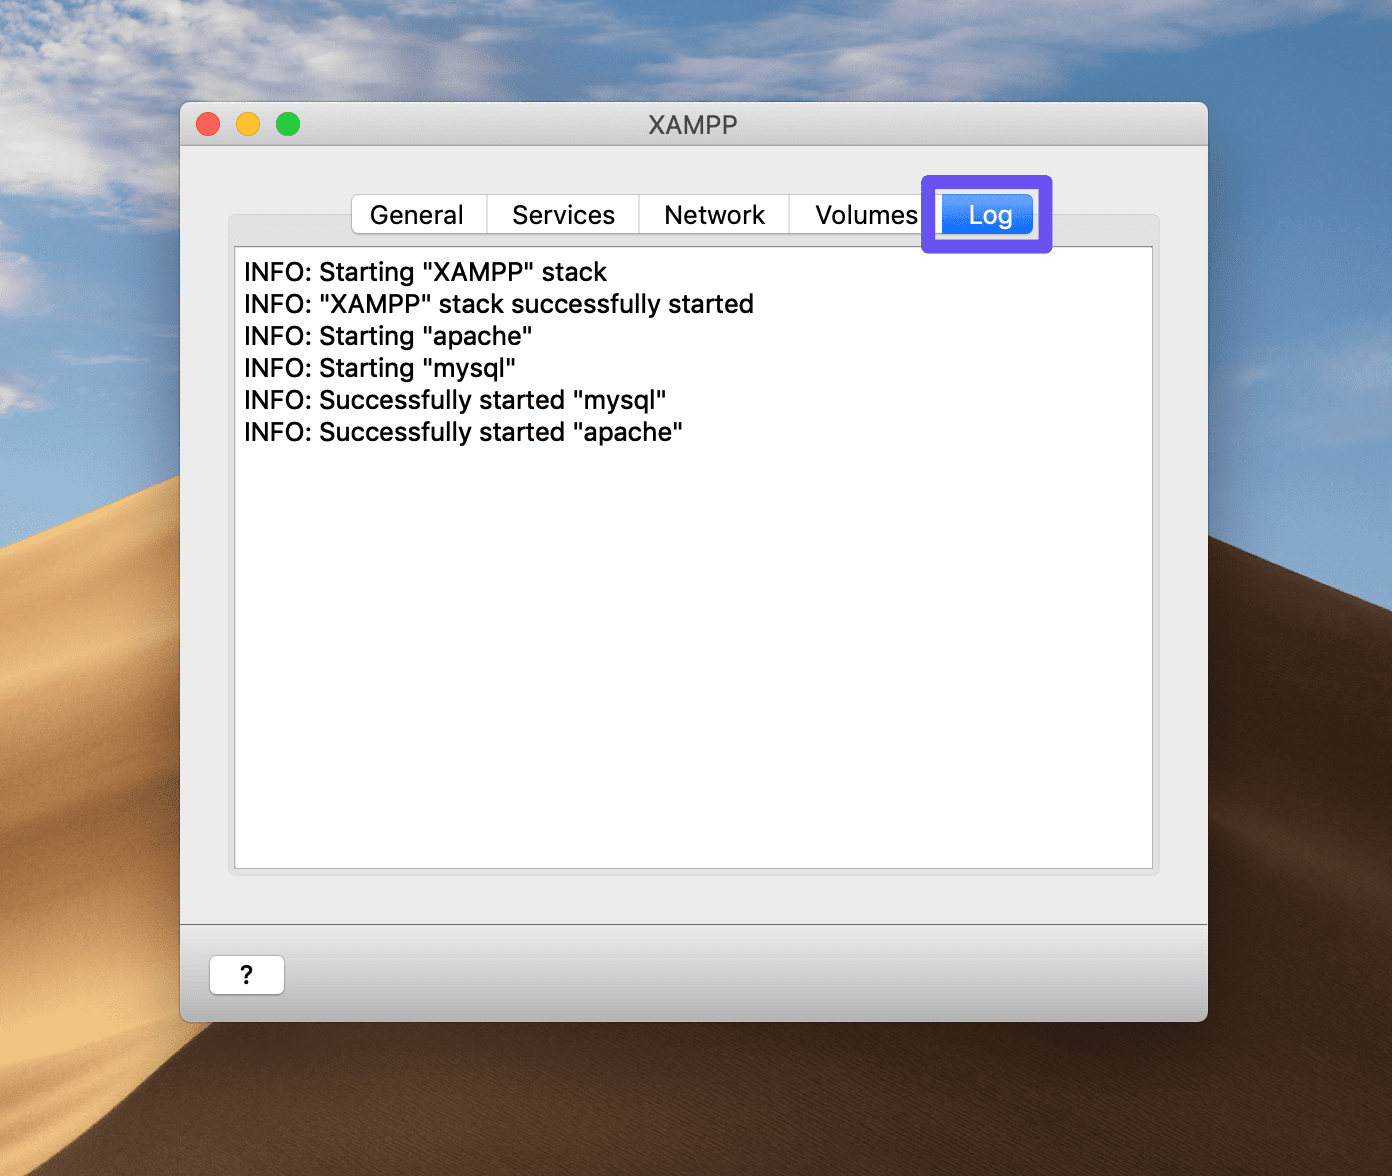 Der Log-Tab des macOS XAMPP Control Panels.